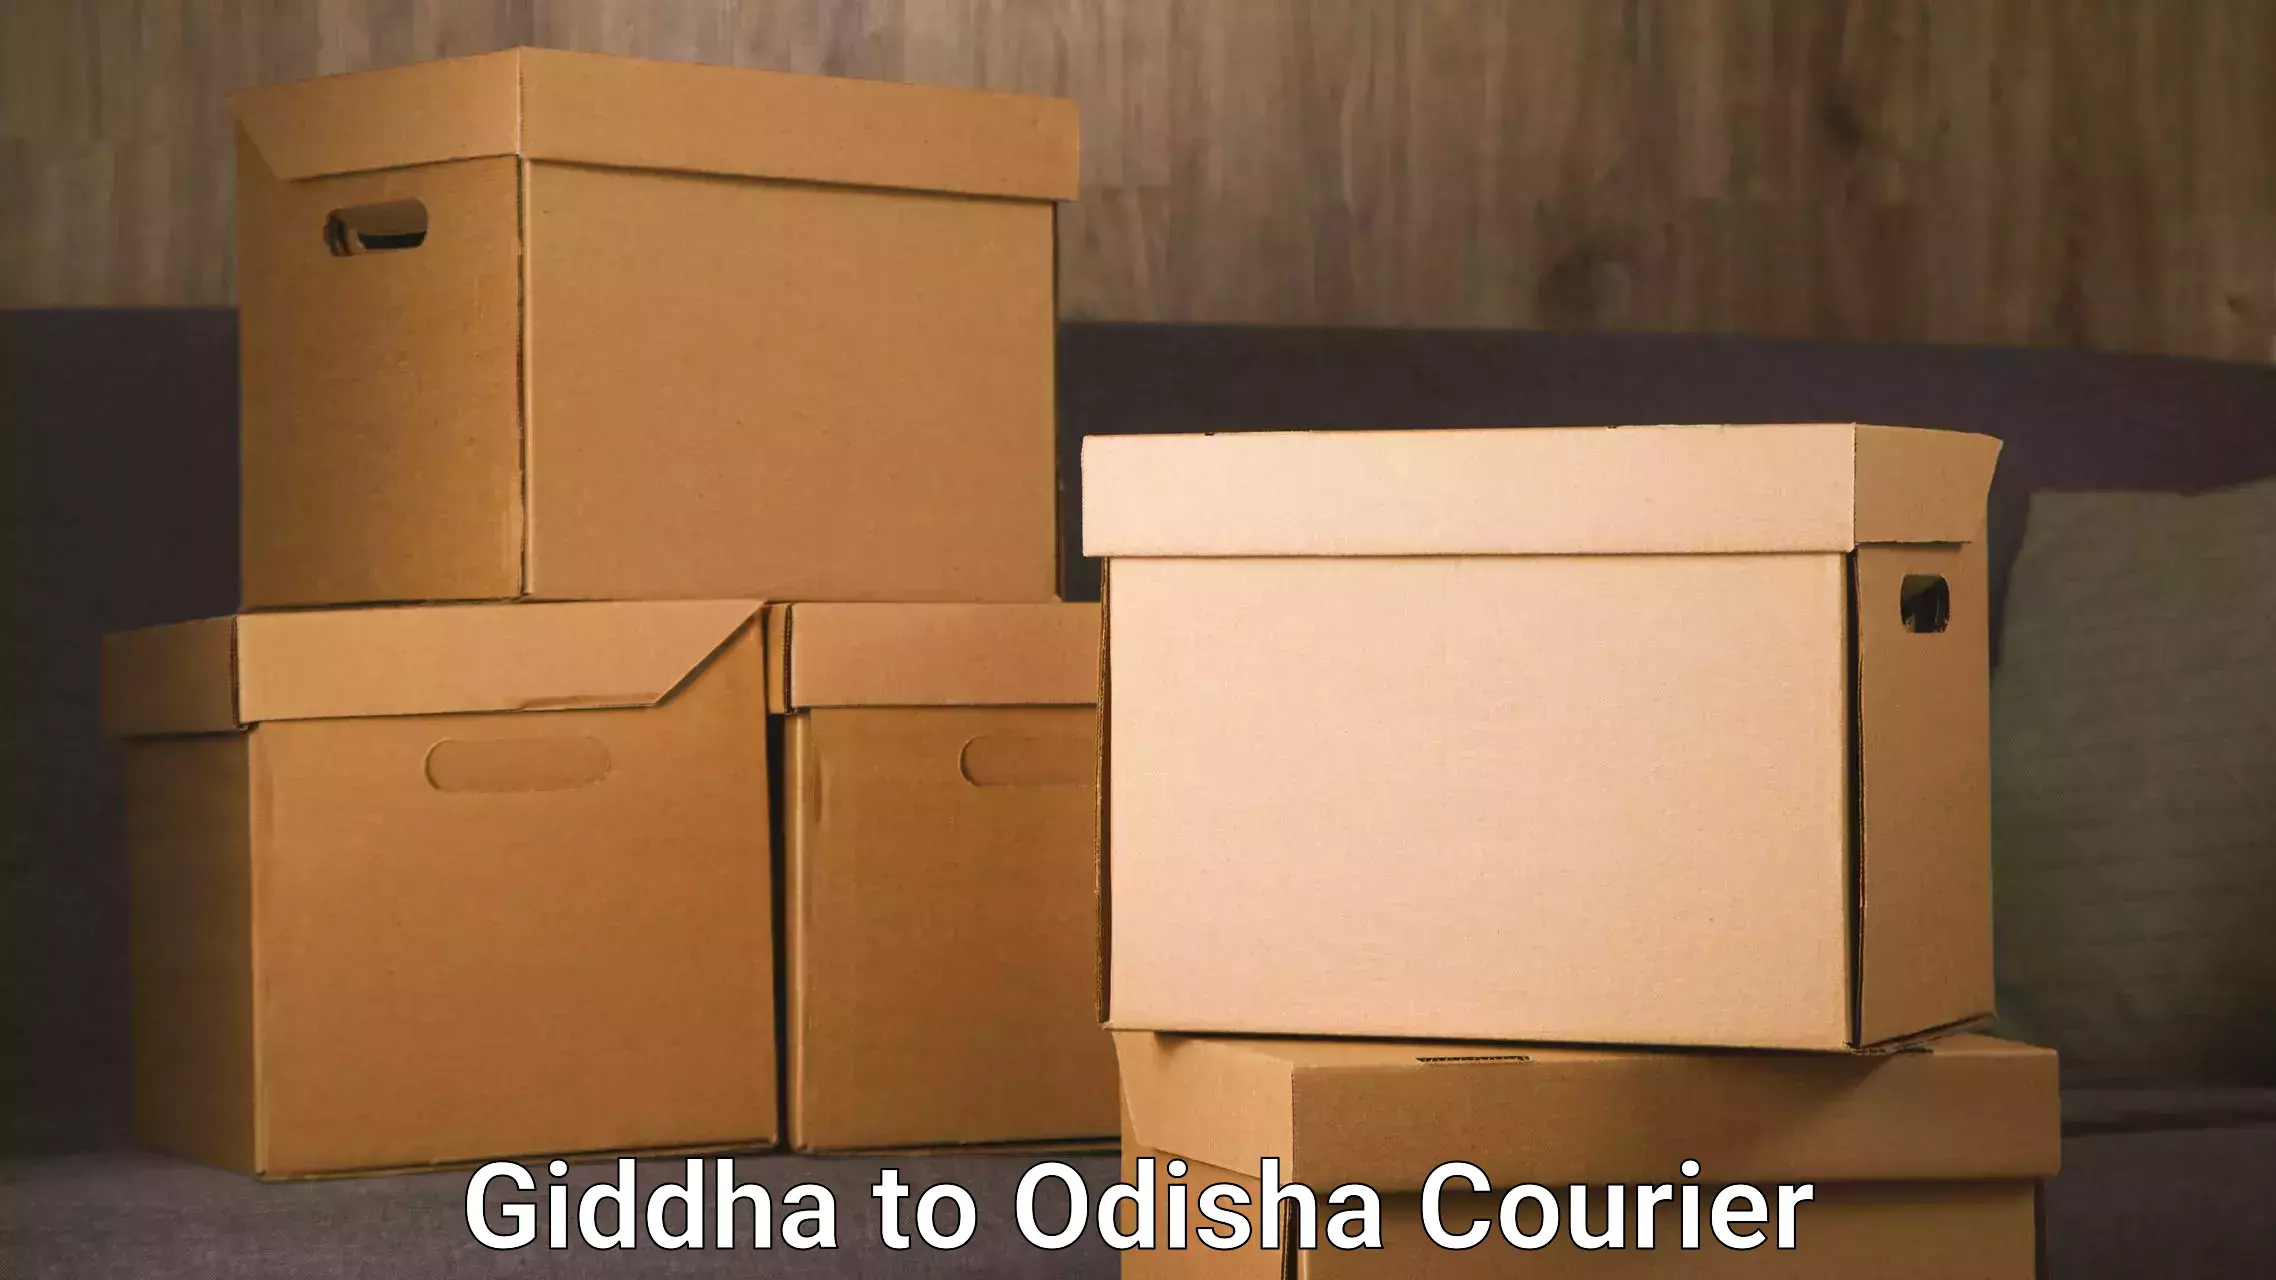 Full-service movers in Giddha to Hinjilicut